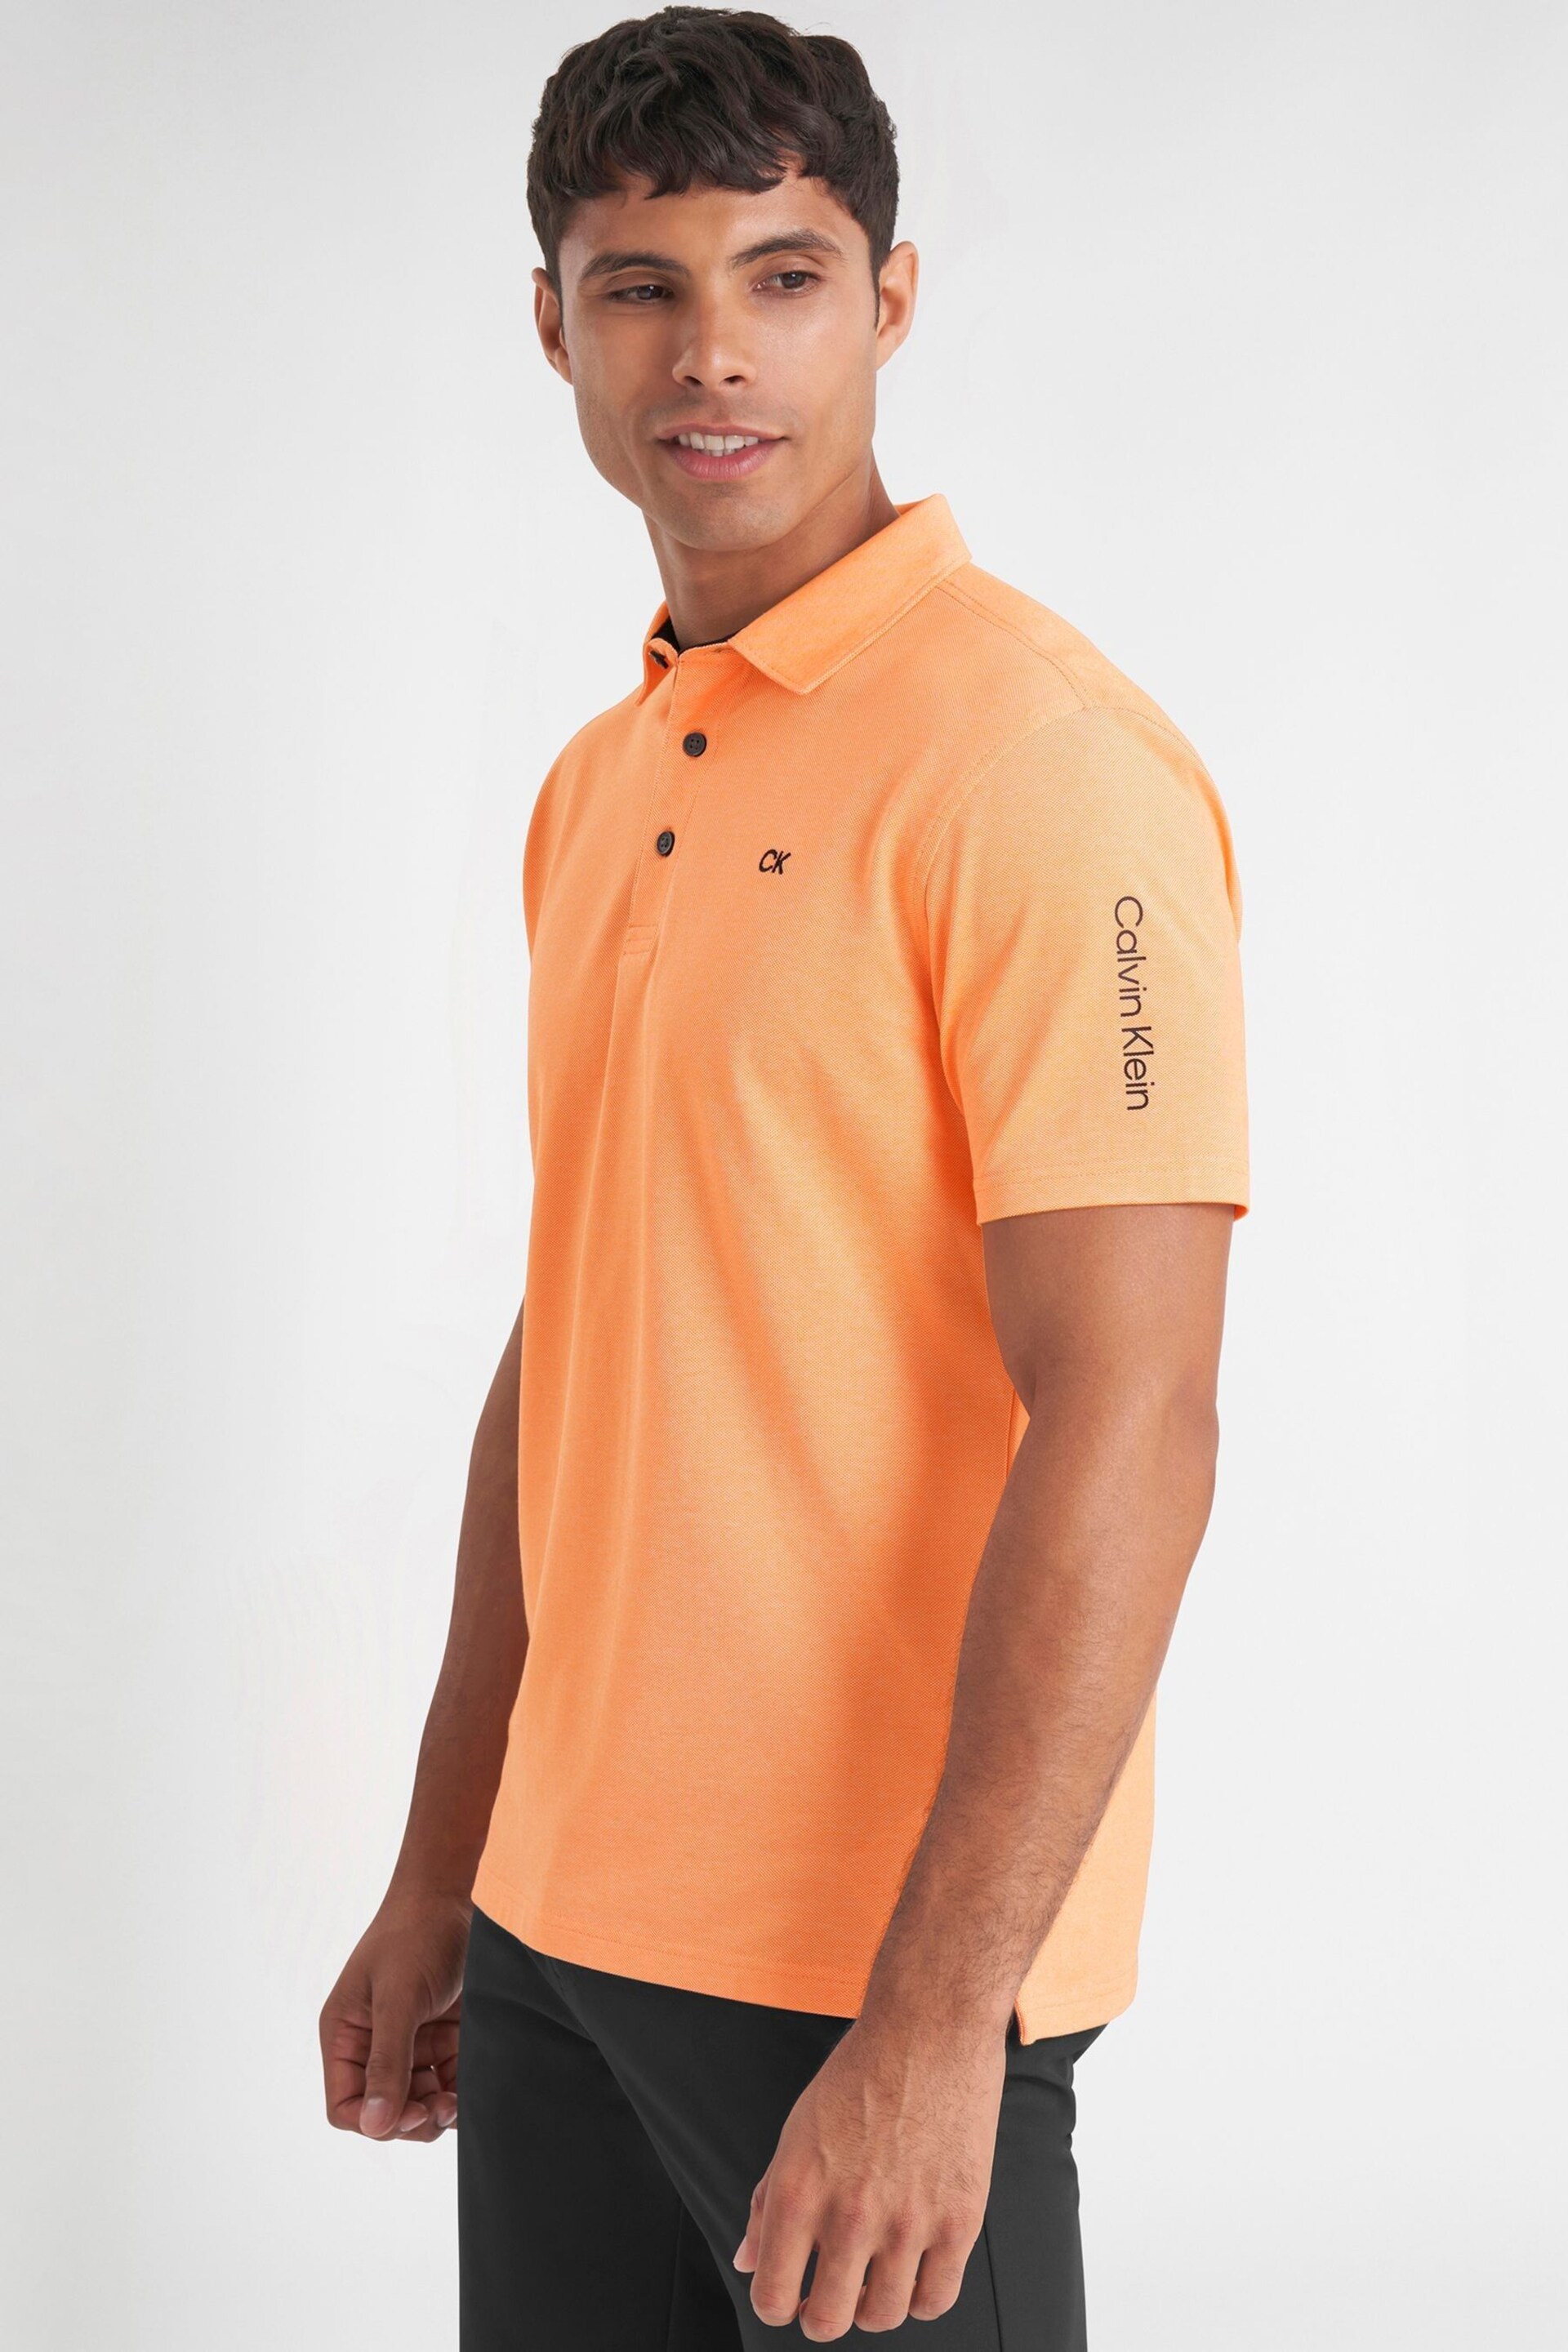 Calvin Klein Orange Golf Uni Polo Shirt - Image 4 of 9